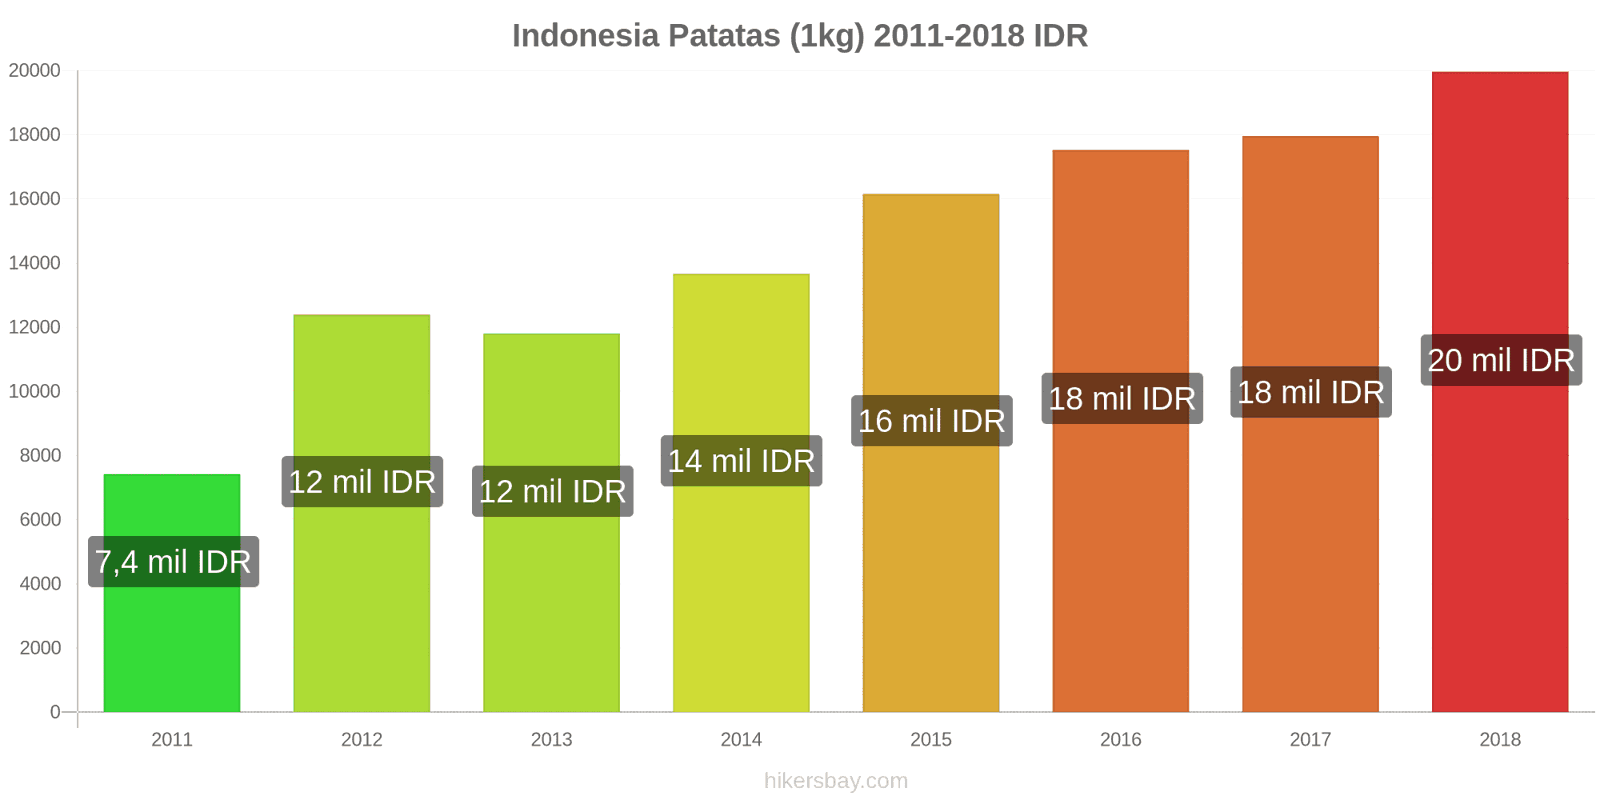 Indonesia cambios de precios Patatas (1kg) hikersbay.com